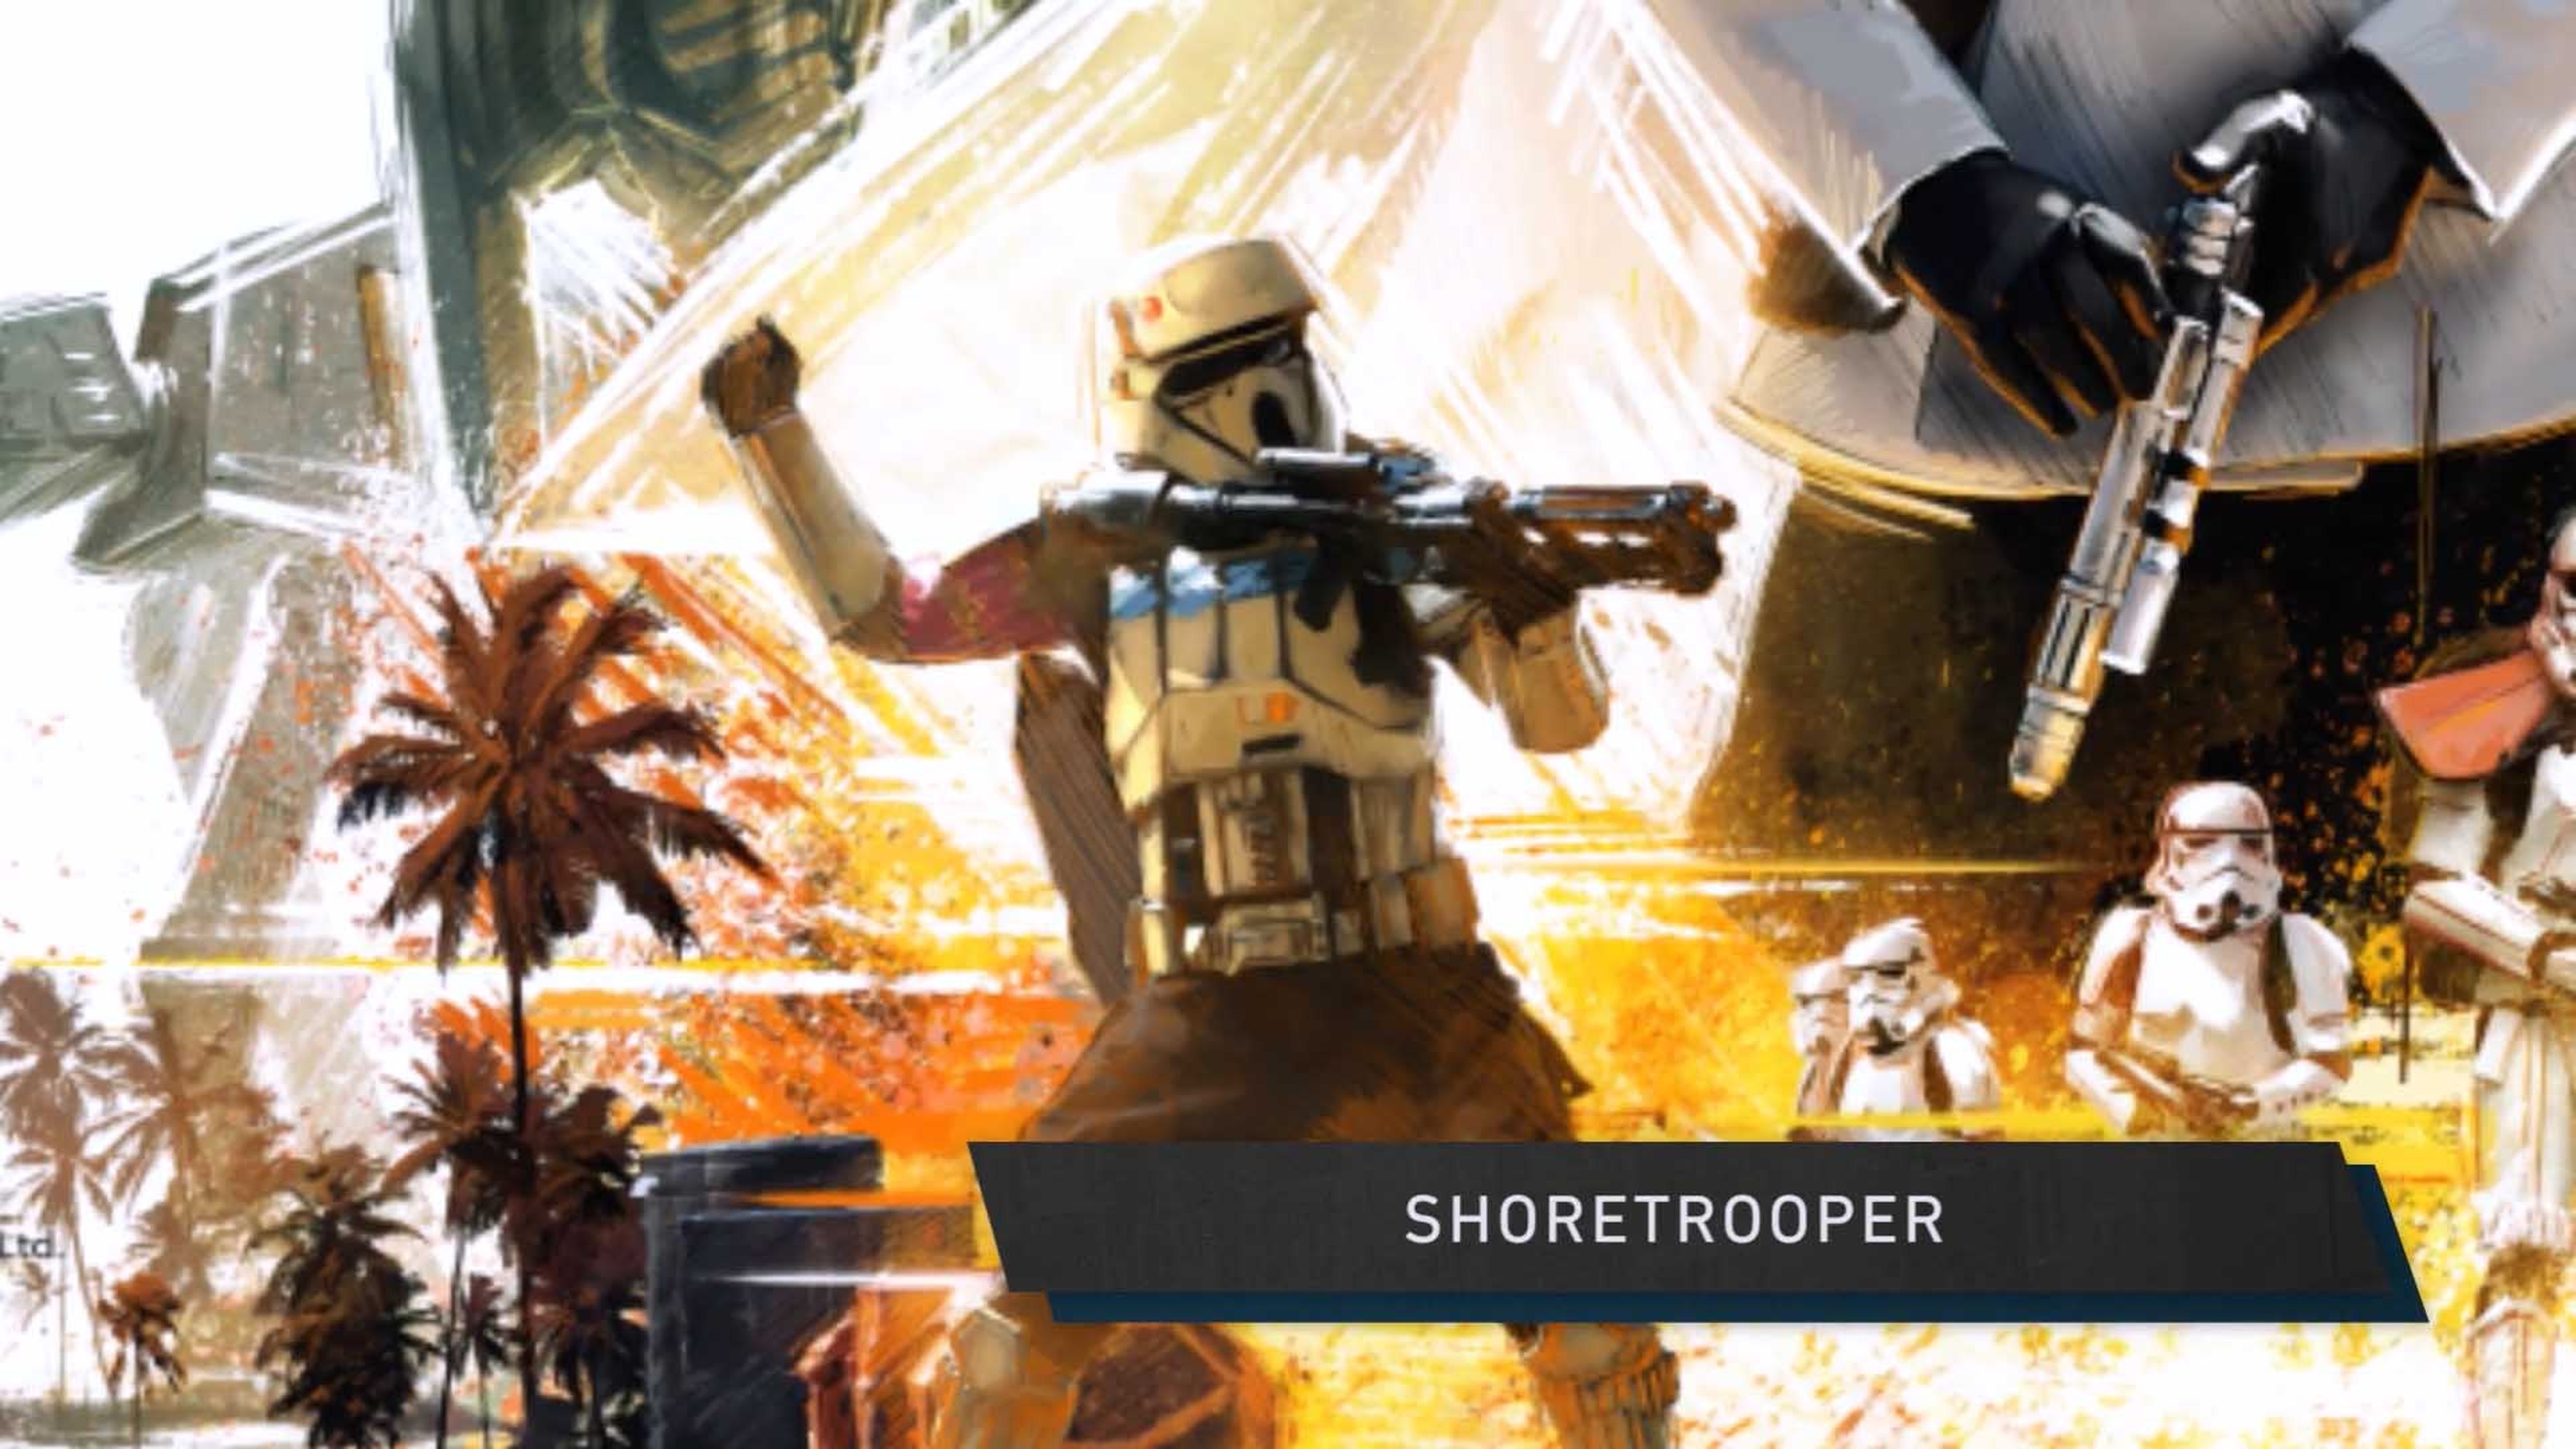 Star Wars Rogue One – Se desvelan interesantes detalles en el nuevo póster de Star Wars